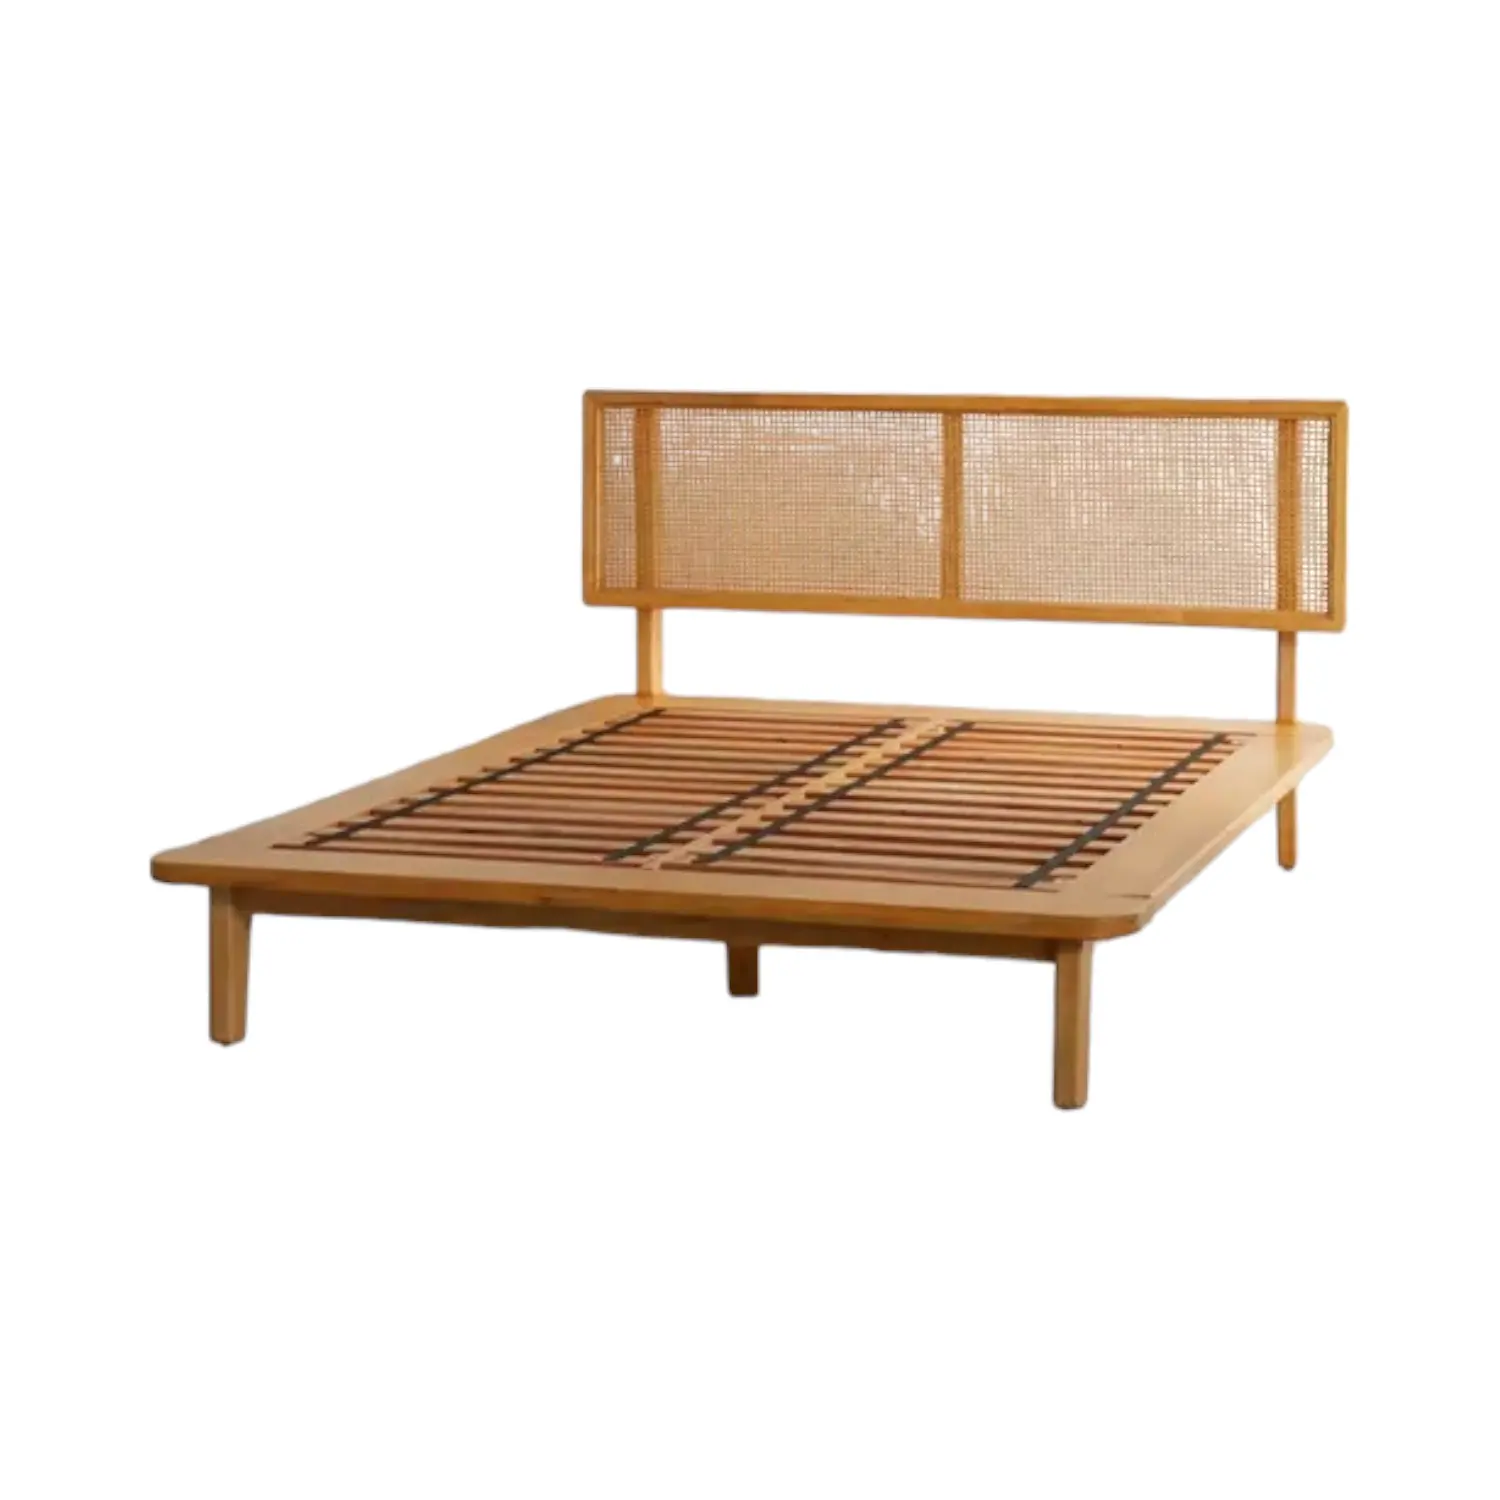 Кровать из массива дерева размера «Queen-Size» с минималистичным дизайном, кровать из цельного дерева из ротанга, обрамляют современные кровати на платформе для мебели для спальни